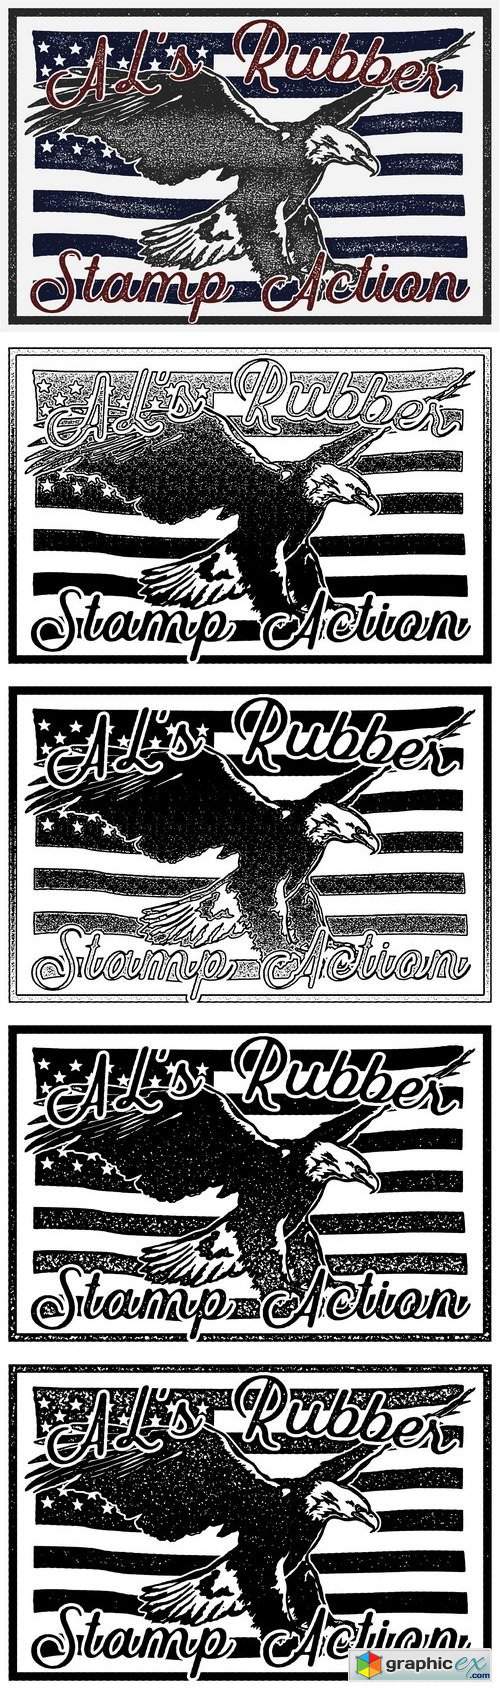 AL's Rubber Stamp Action Kit